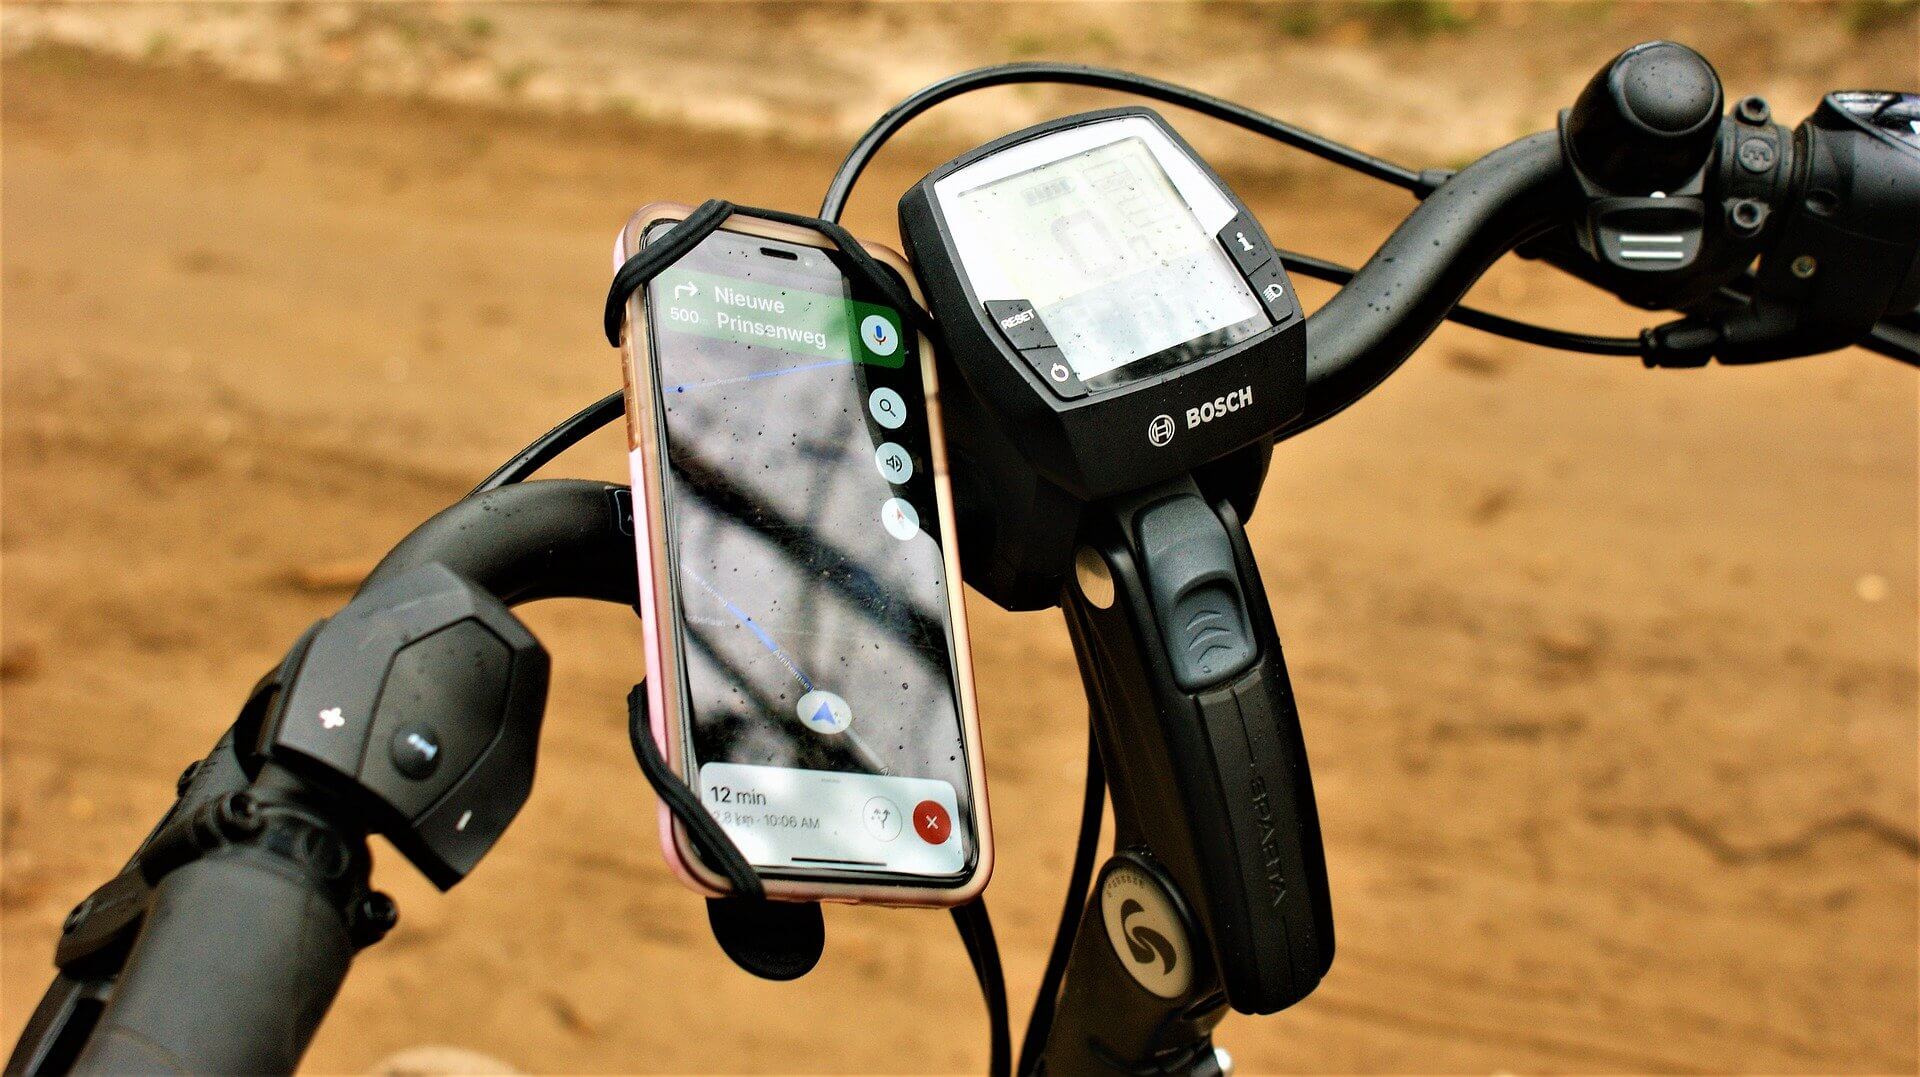 Fahrrad Handyhalterung für iPhone, Samsung, Huawei, Mi und viele andere